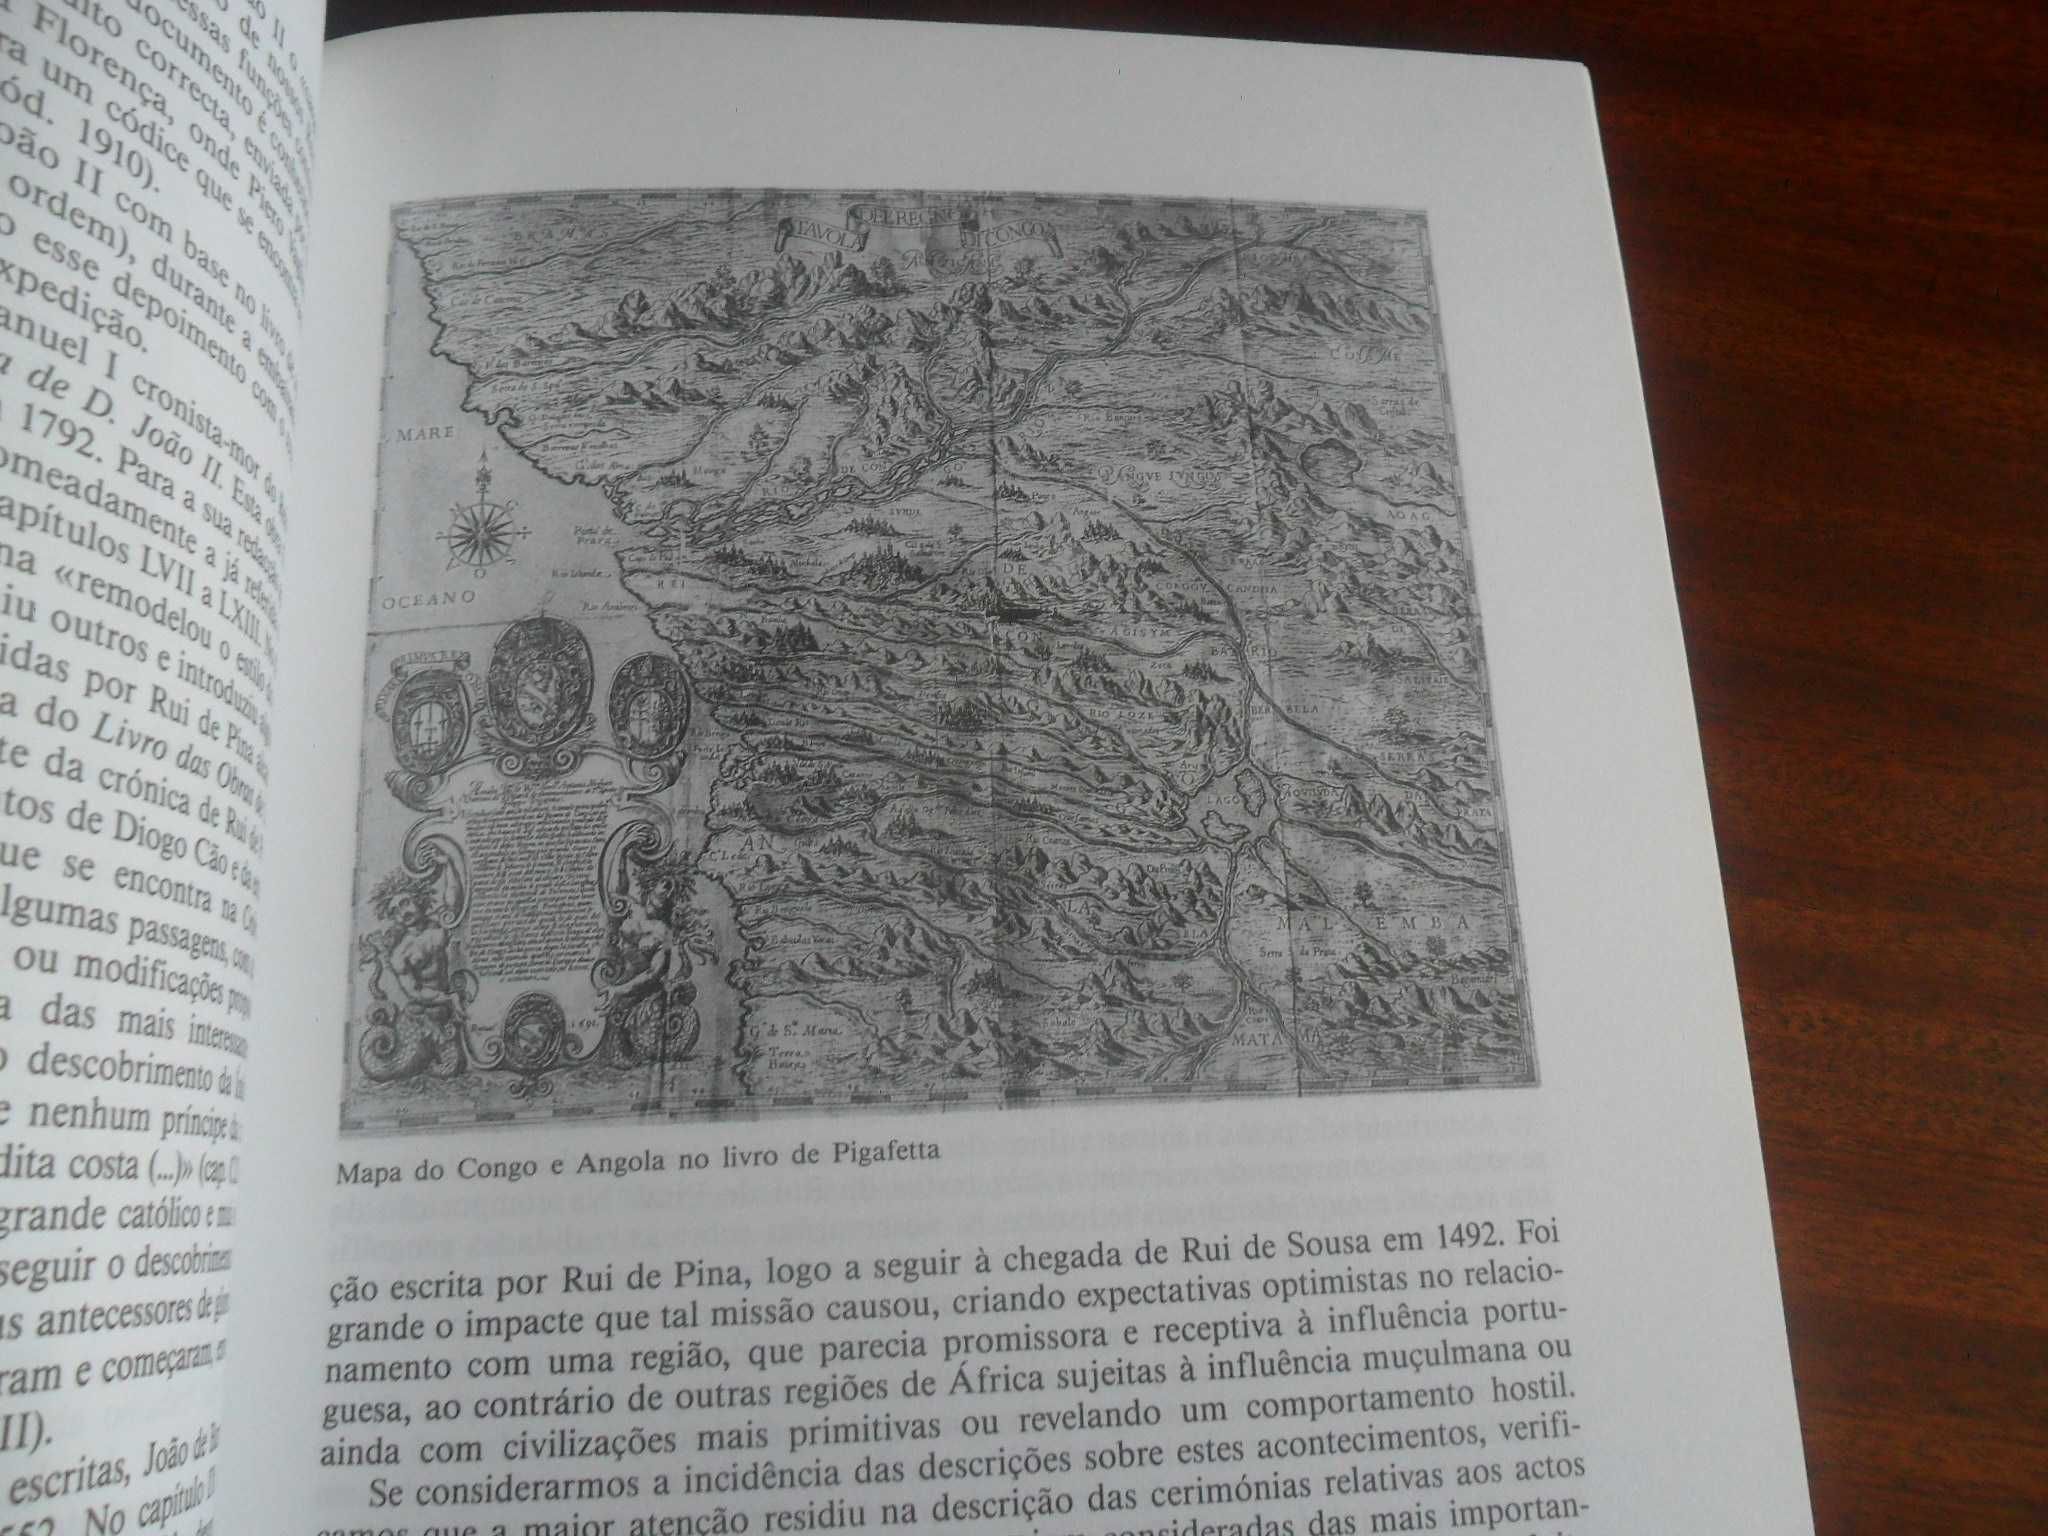 "Ao Encontro dos Descobrimentos" de José Manuel Garcia -1ª Edição 1994